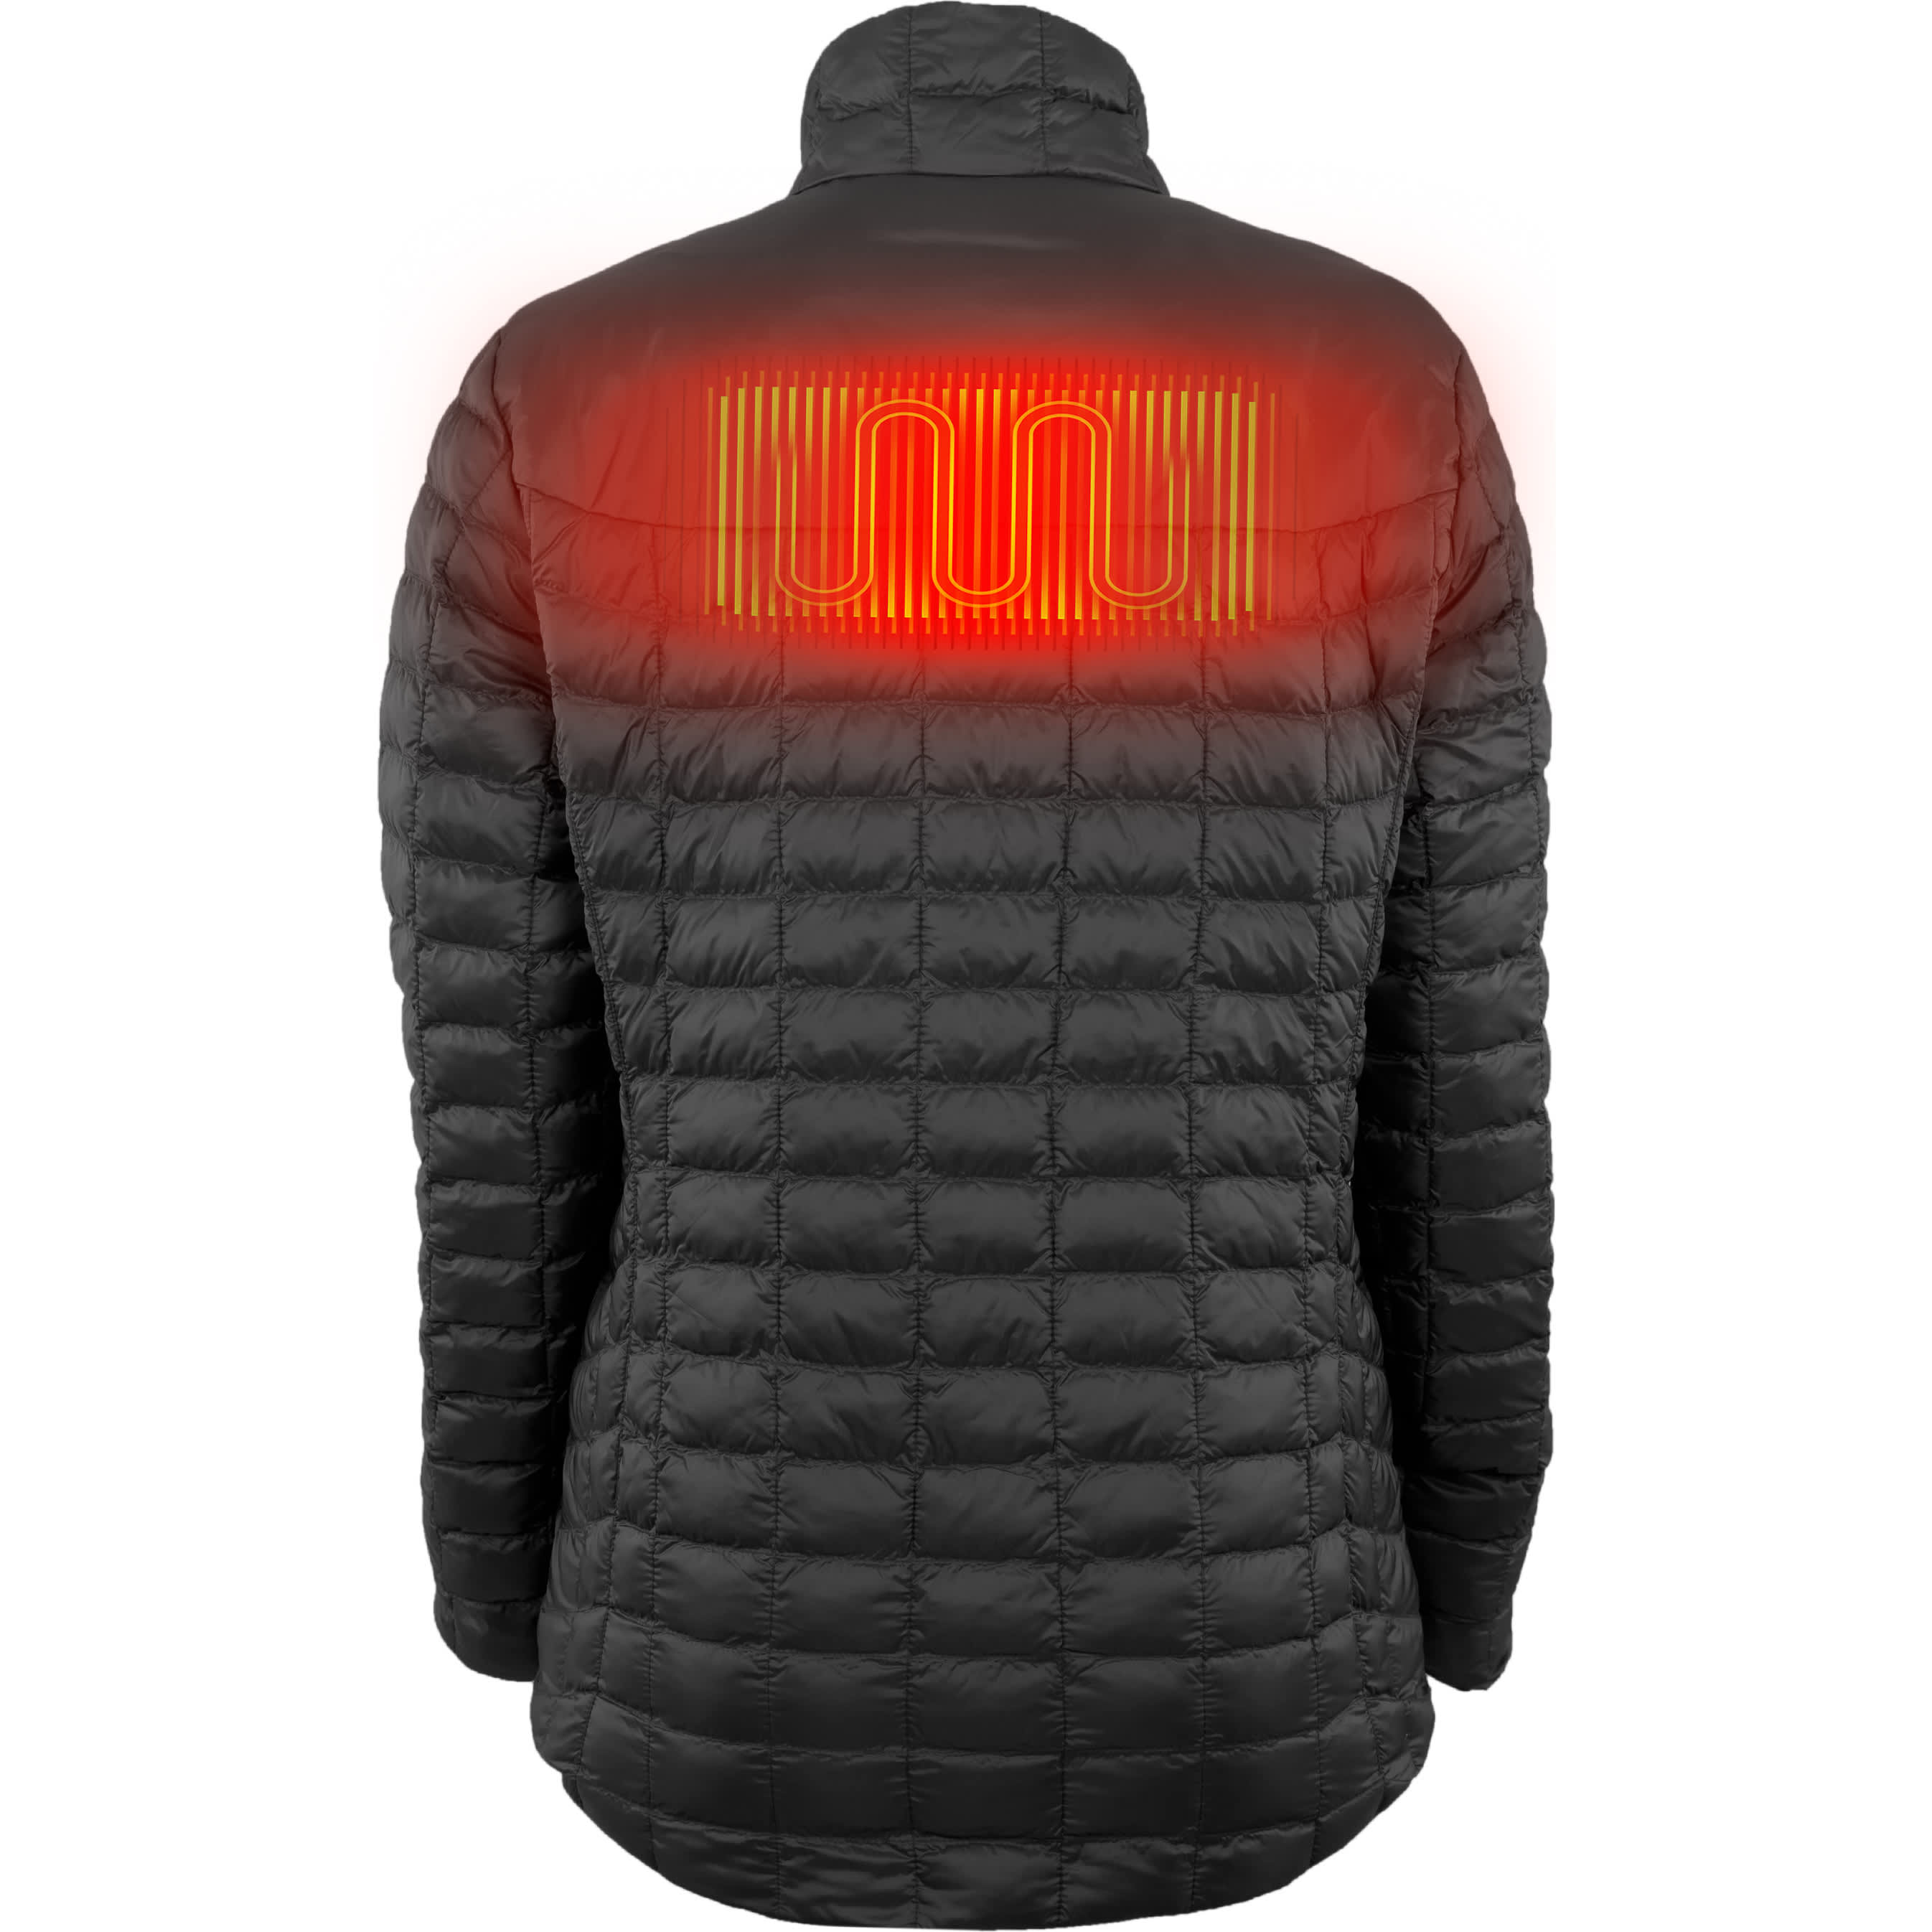 Fieldsheer® Women’s Backcountry Heated Jacket